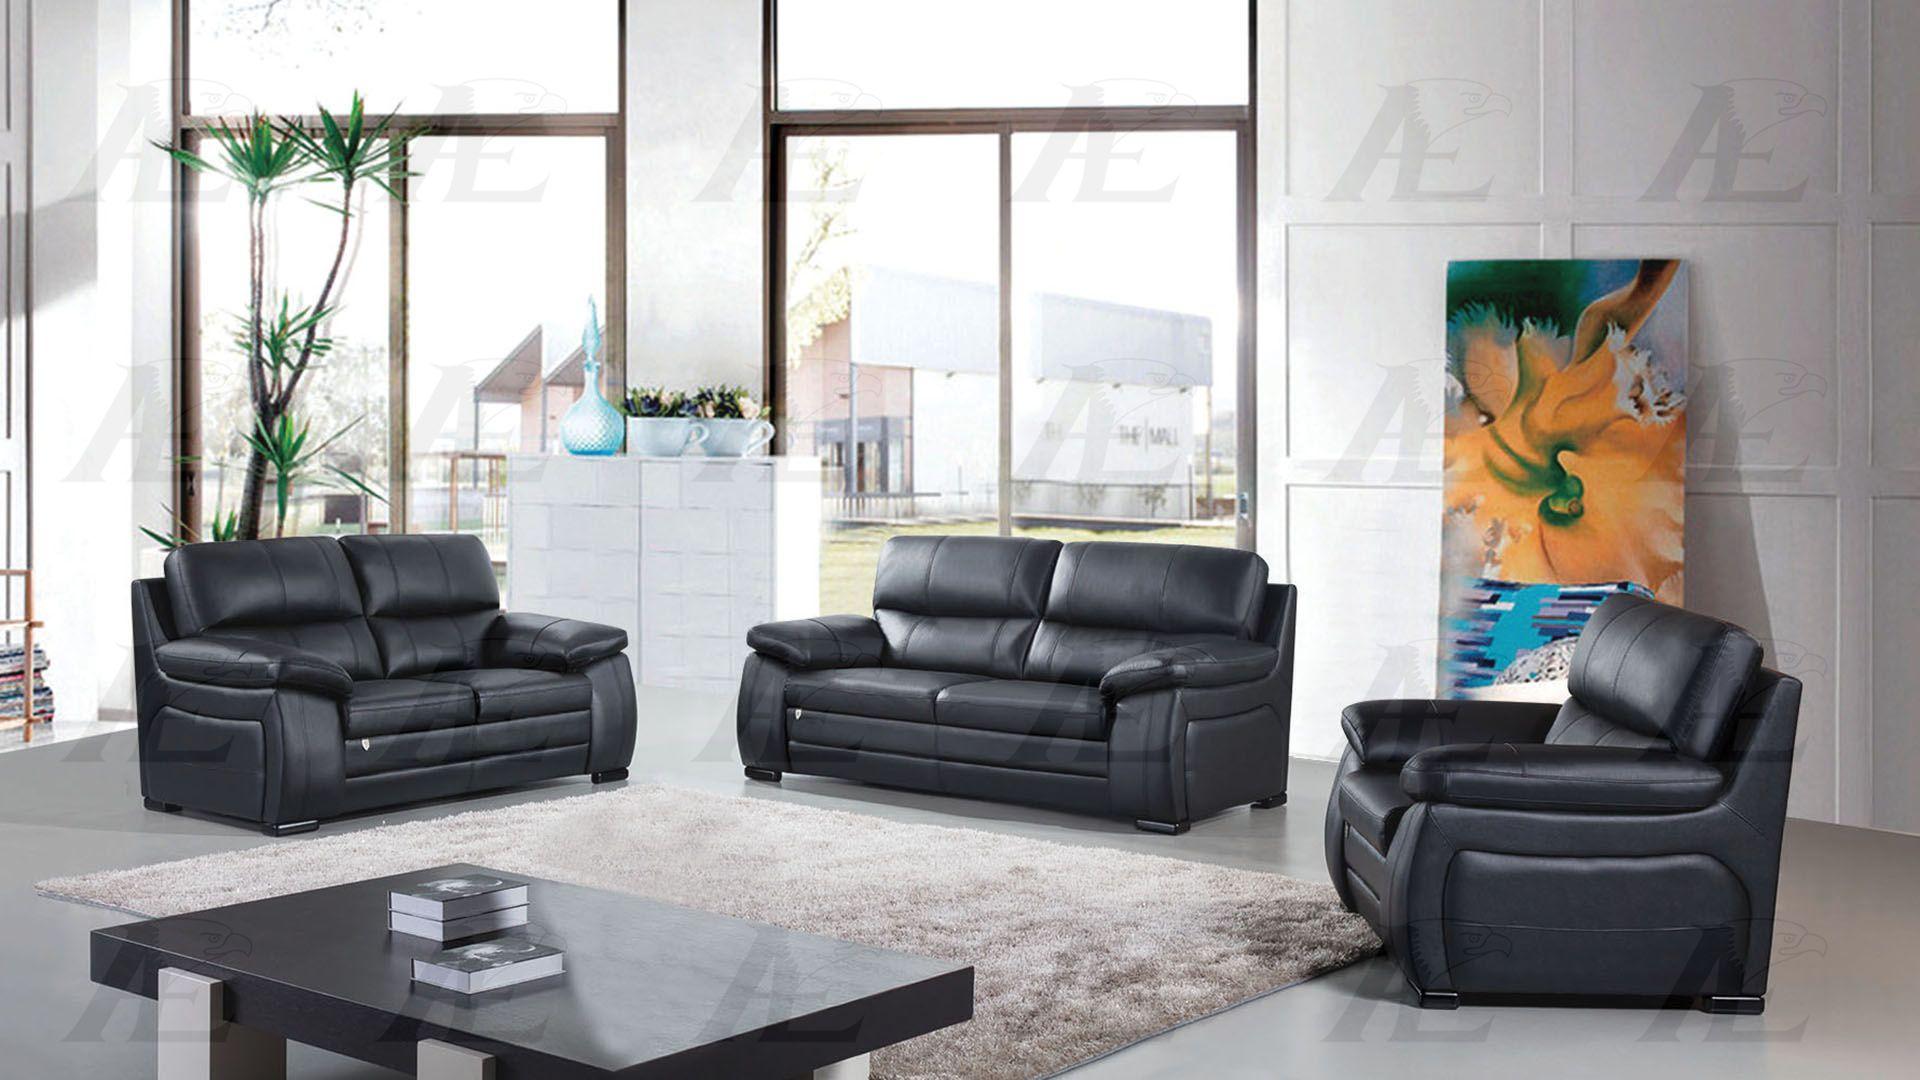 

    
American Eagle Furniture EK041-BK-SF Sofa Black EK041-BK-SF
